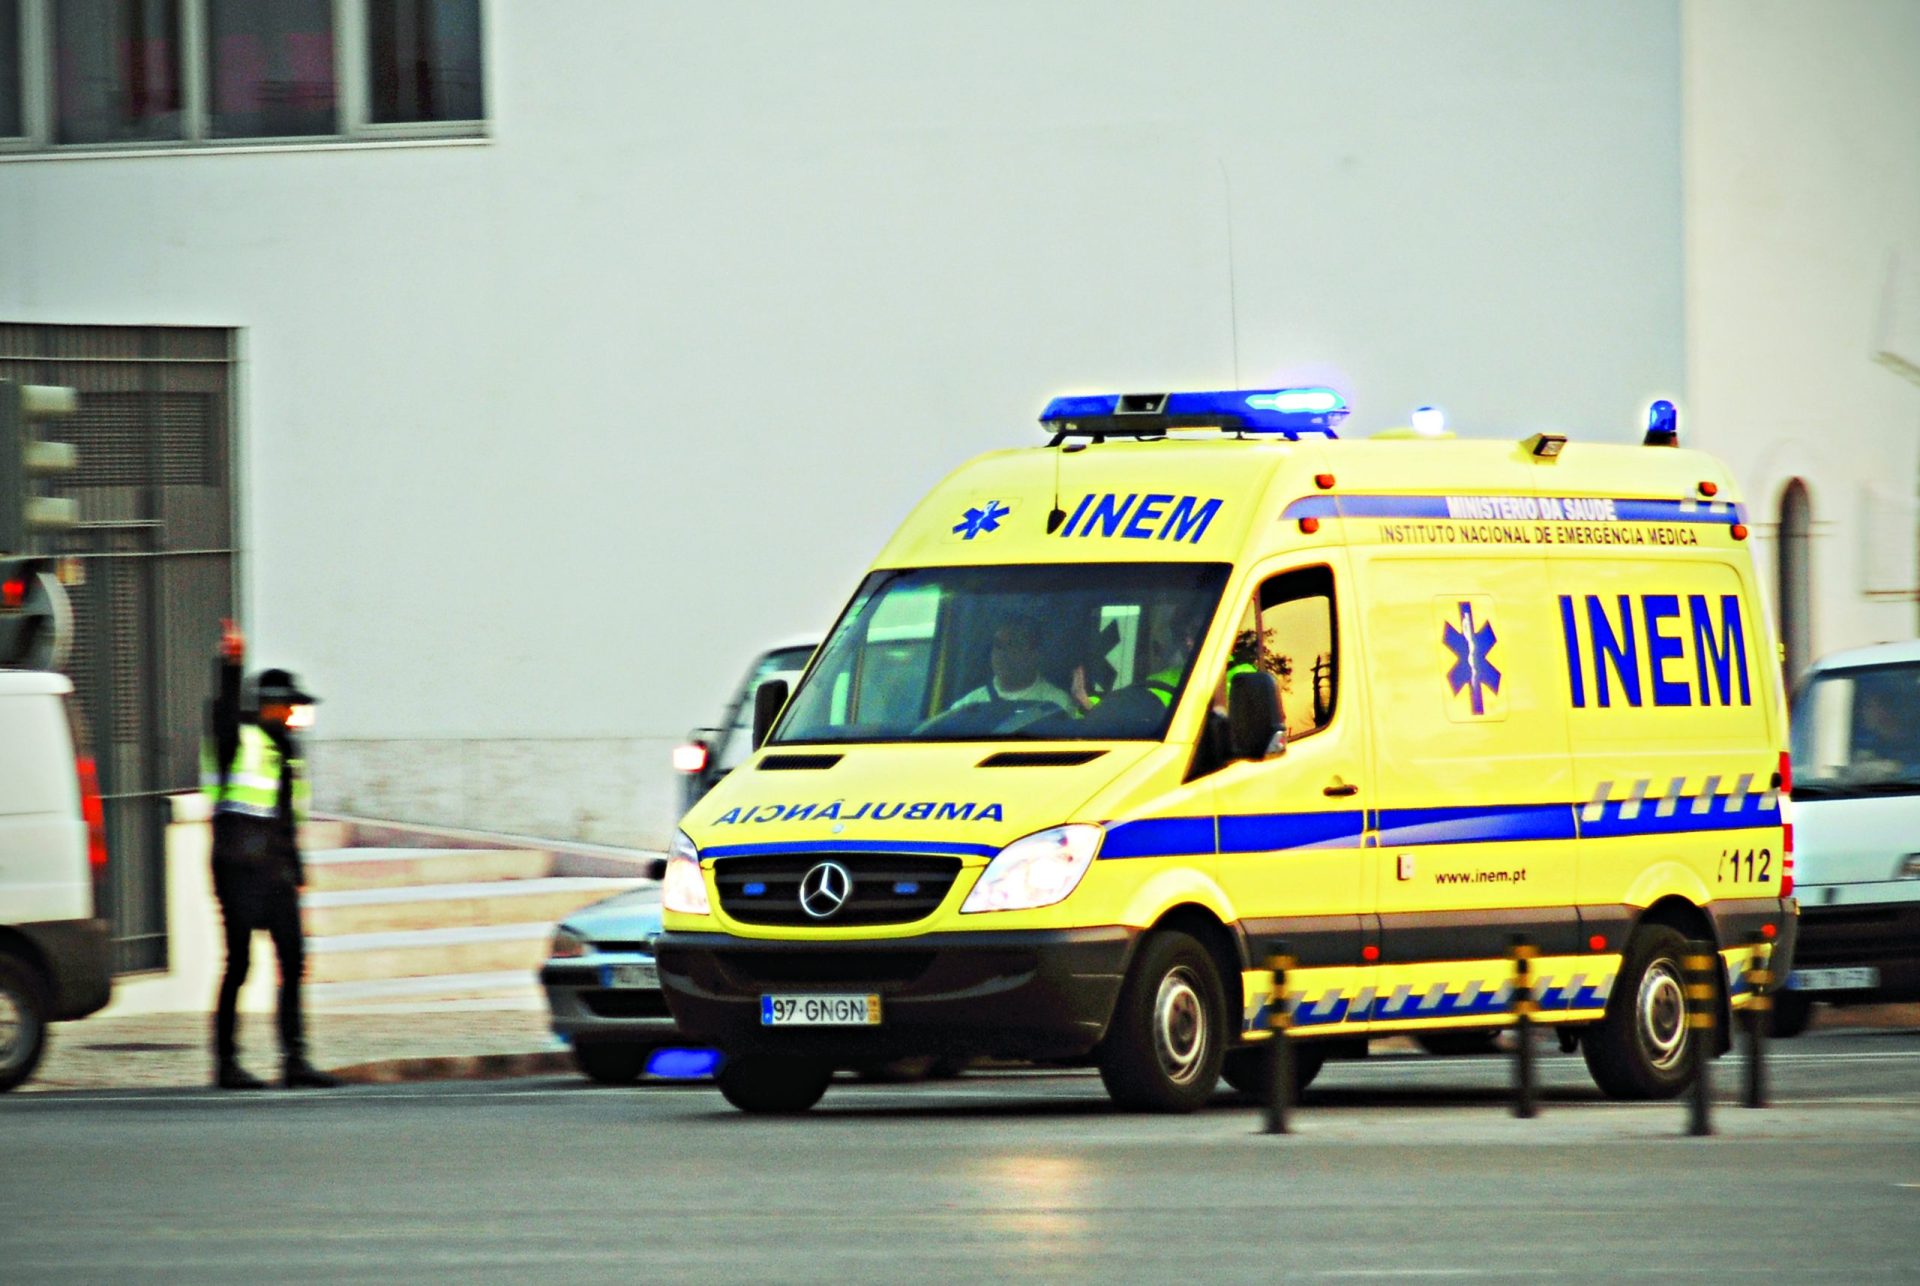 Mecânico morre esmagado quando arranjava autocarro em Oeiras